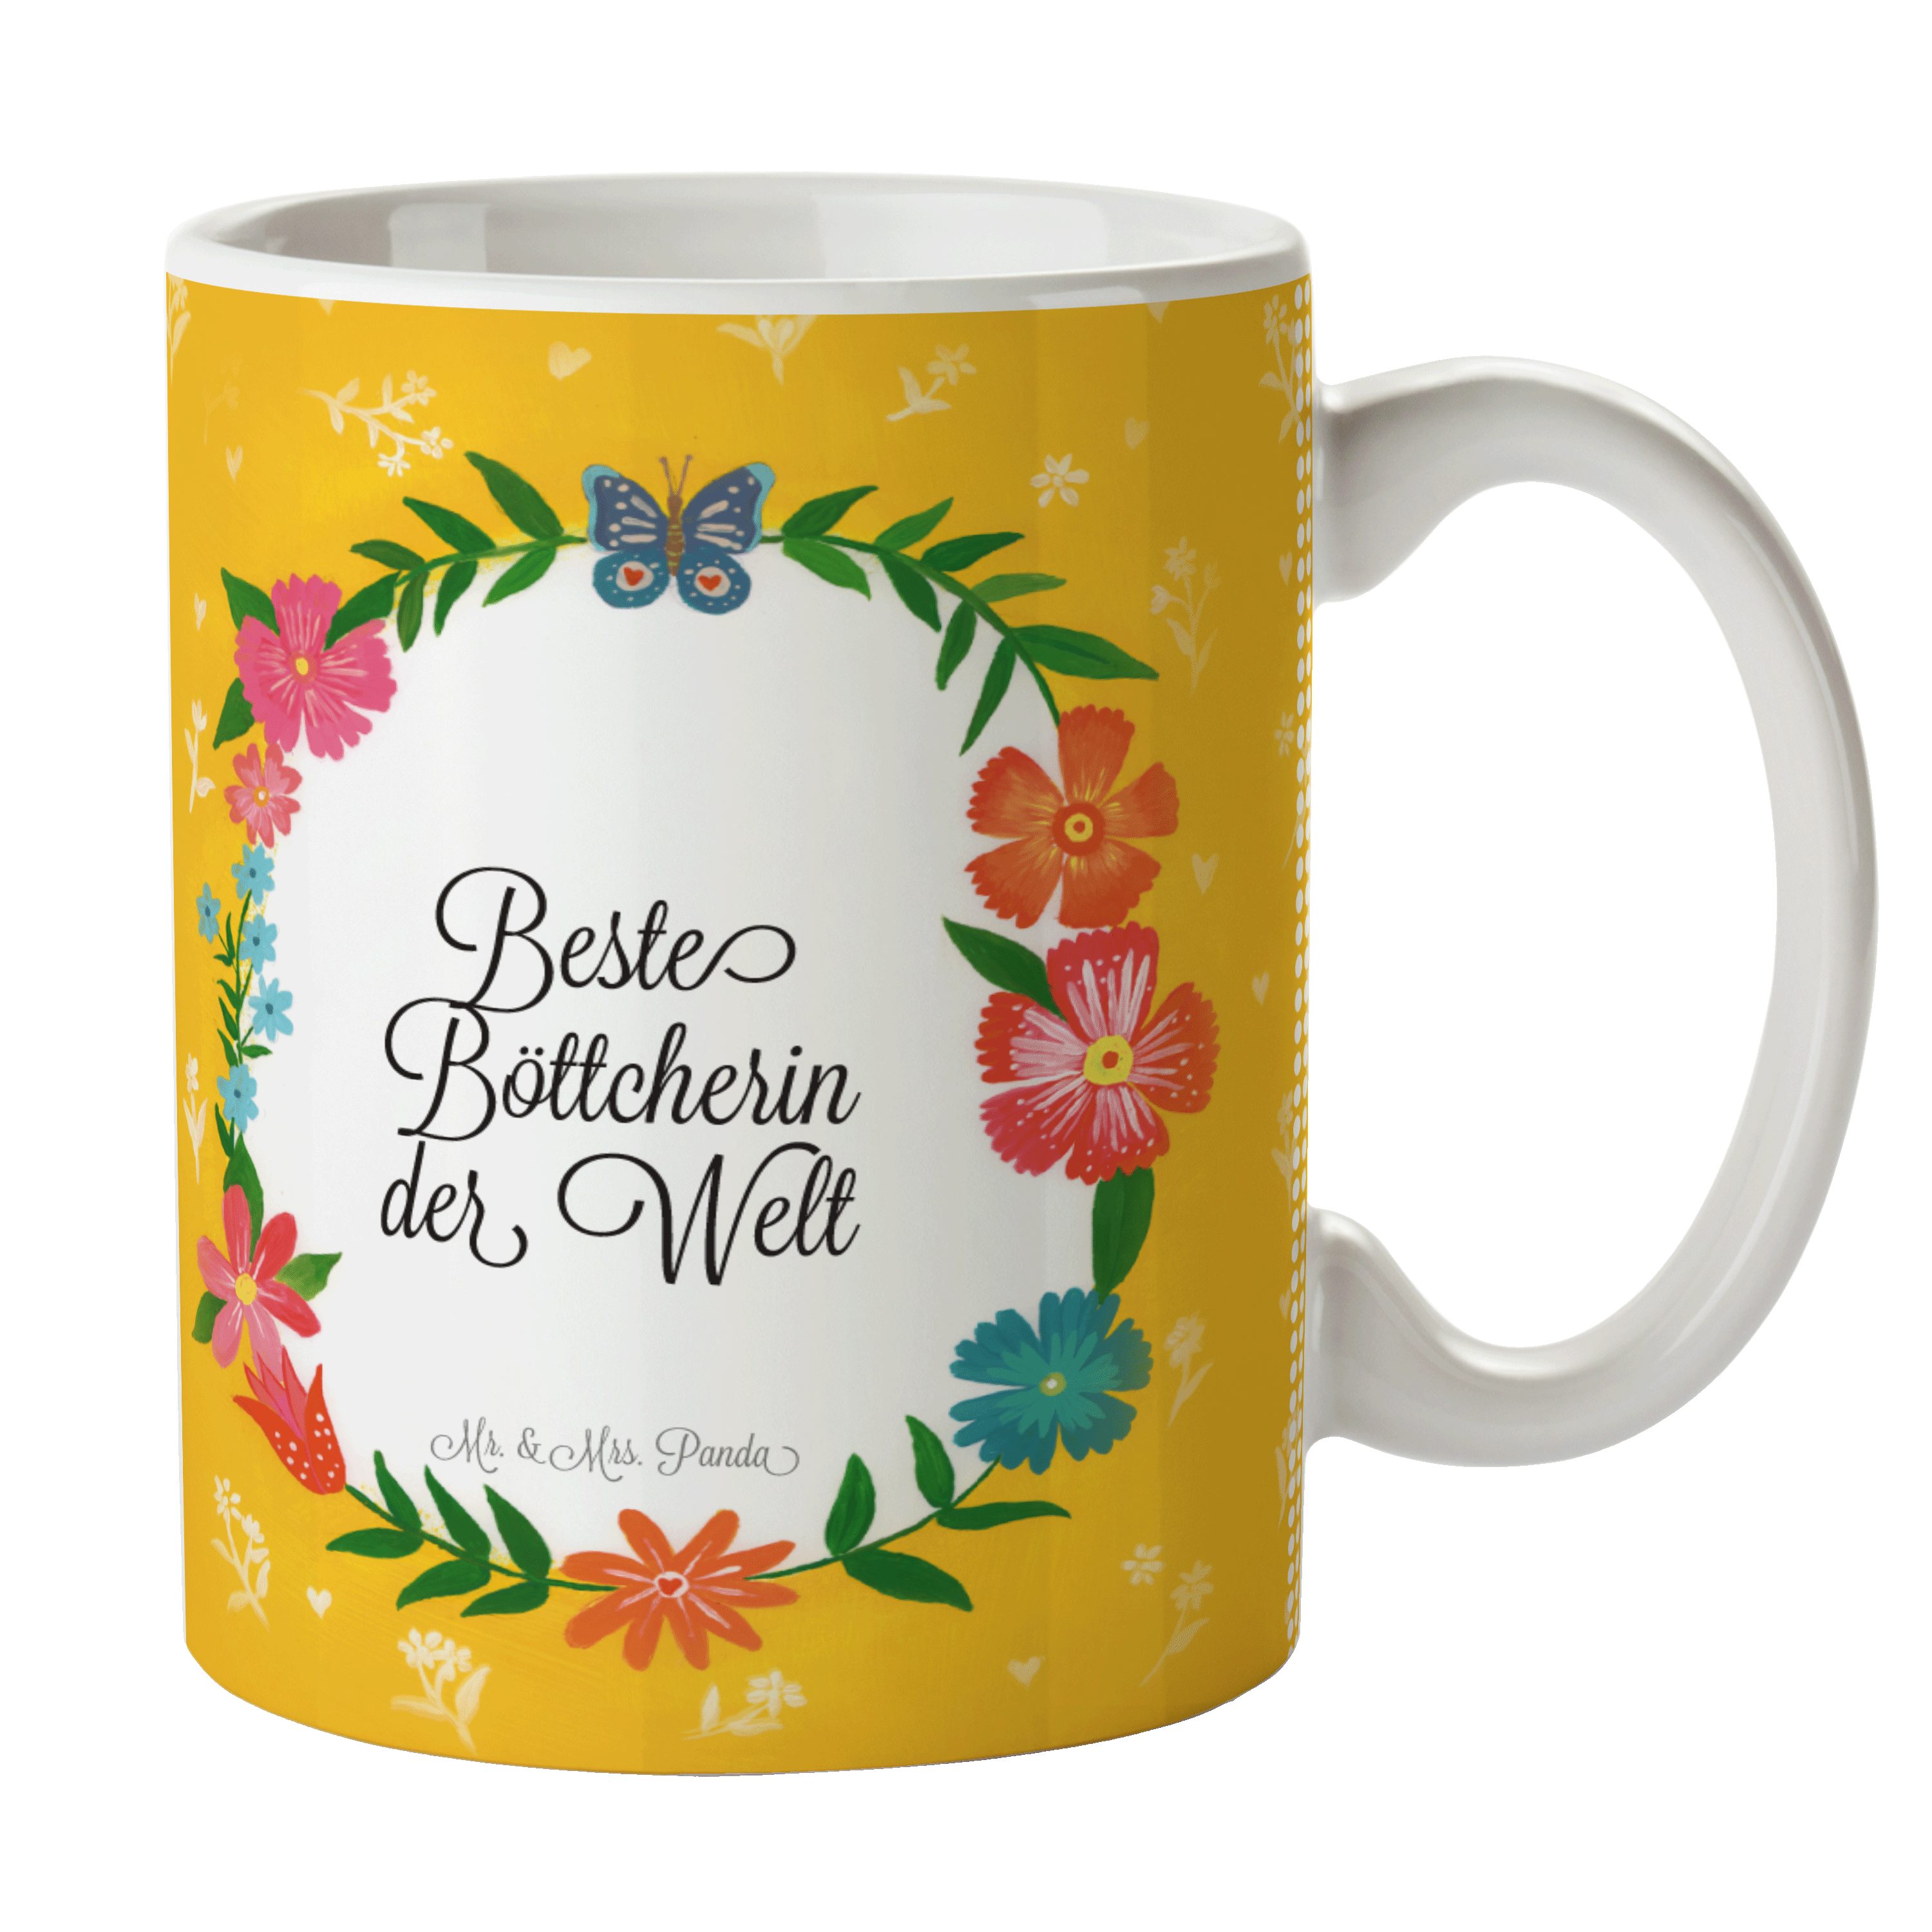 Mr. & Mrs. Panda Tasse Geschenk, Böttcherin Tasse, - Tasse Tasse Sprüche, Teetasse, Keramik Motive